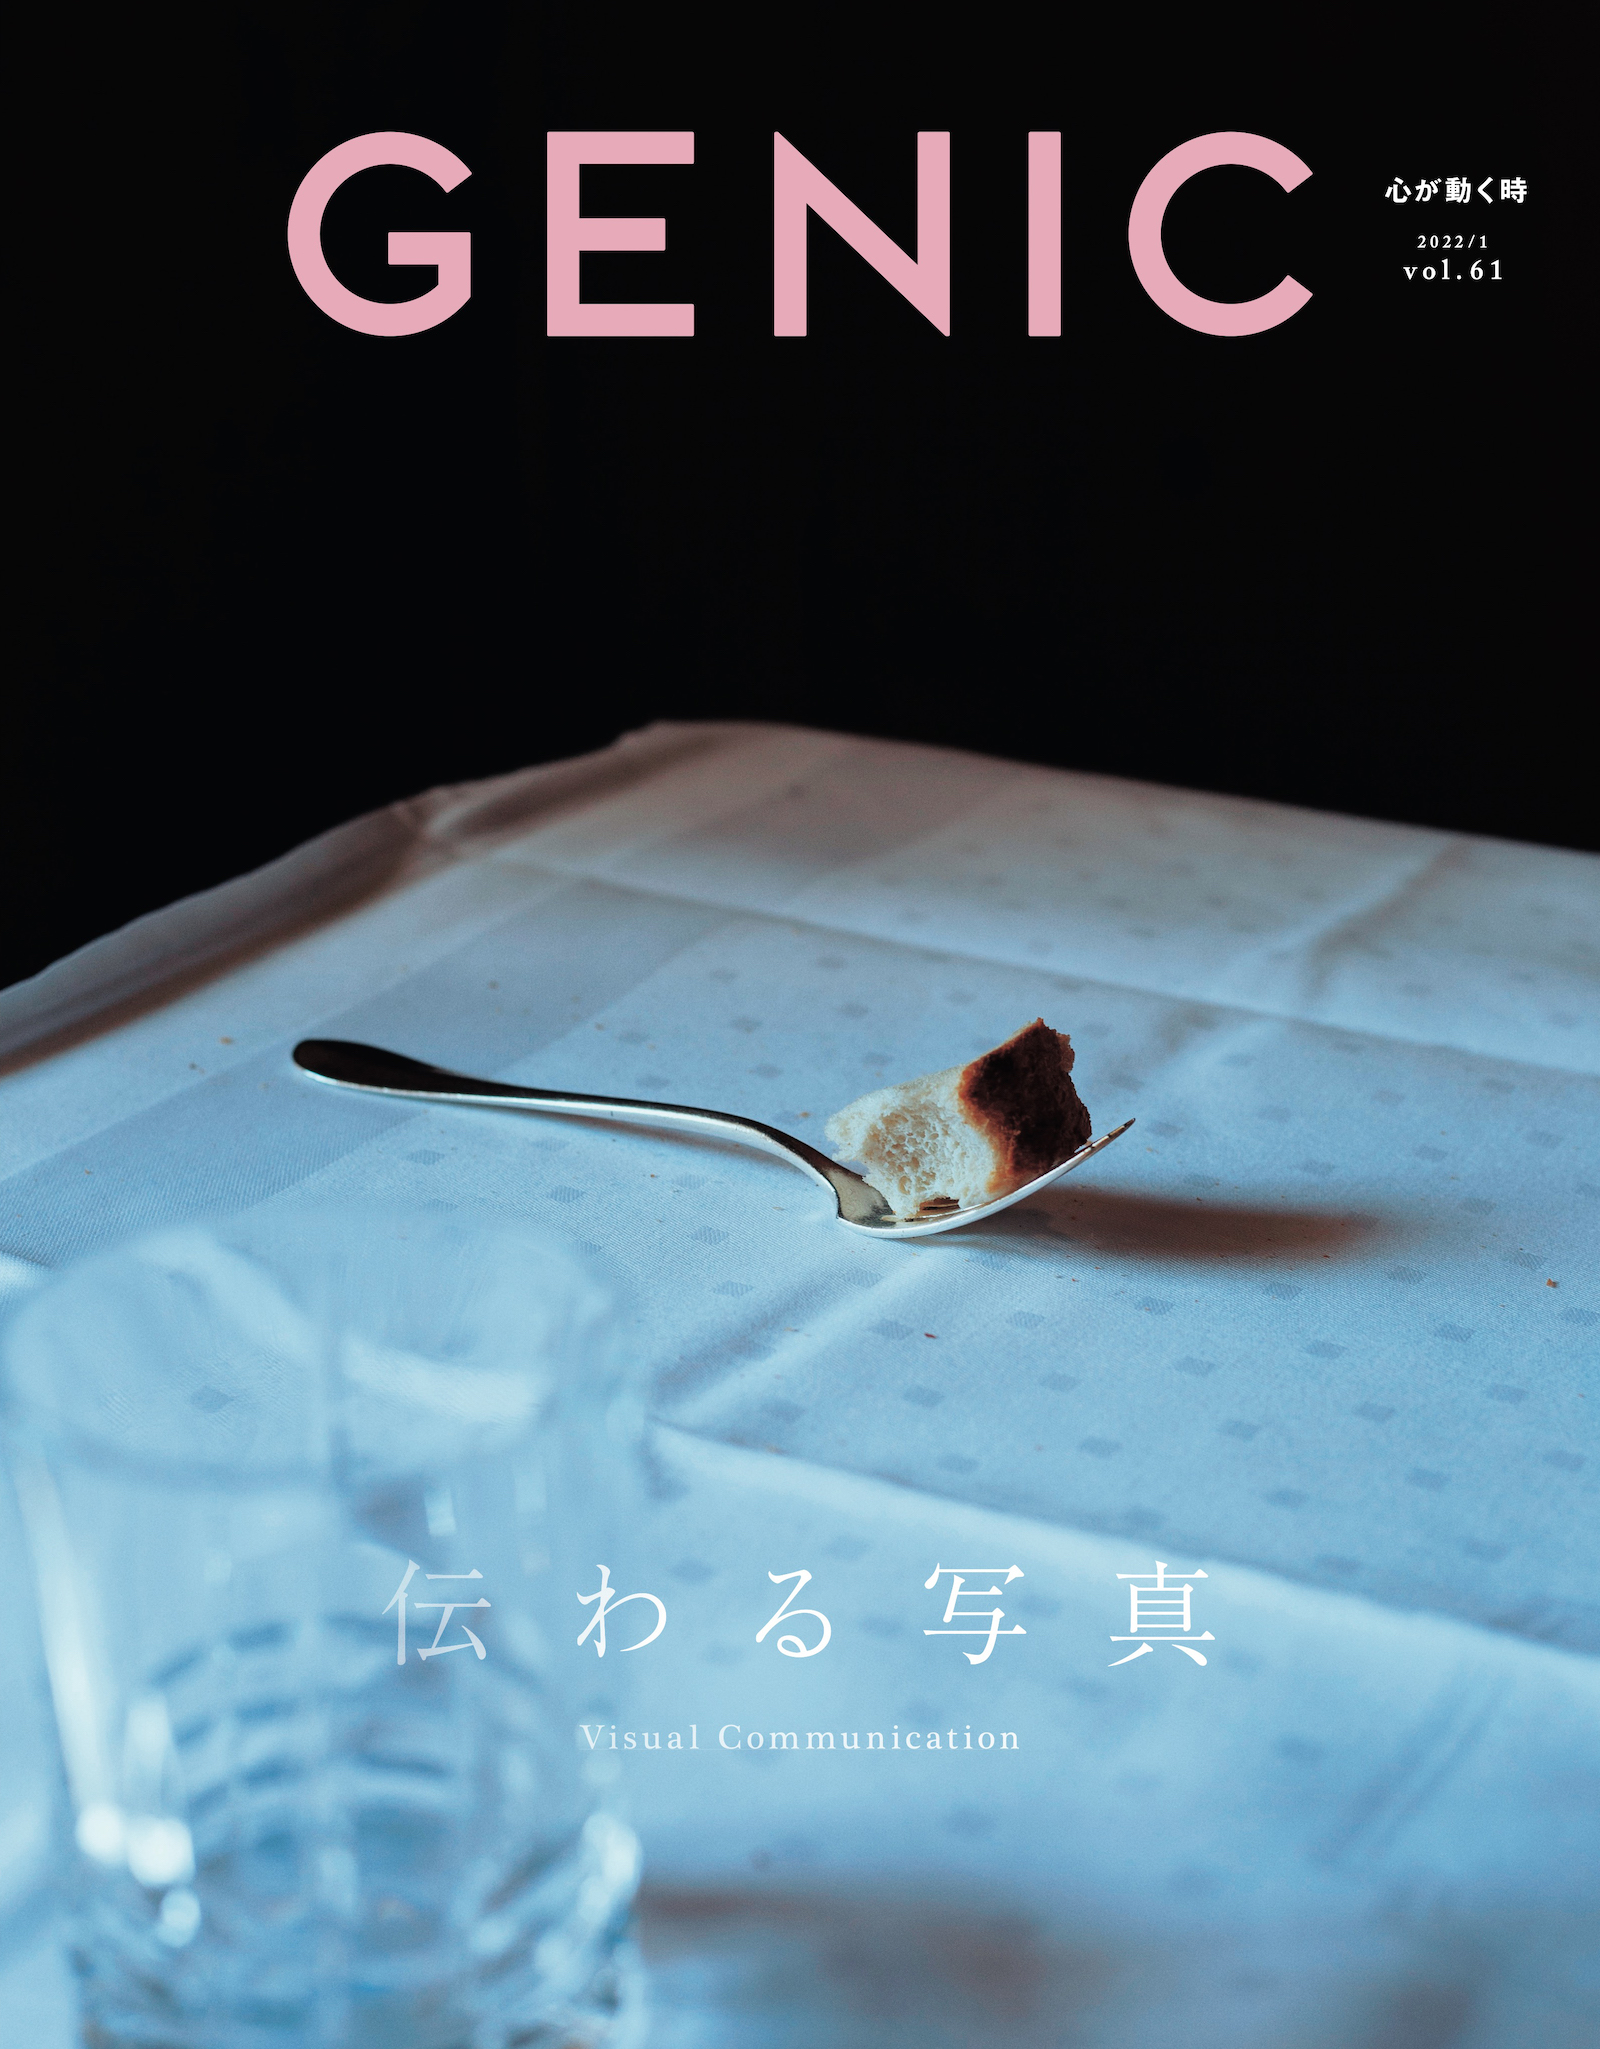 特集は「伝わる写真」。雑誌 GENIC 2022年1月号は12月7日発売